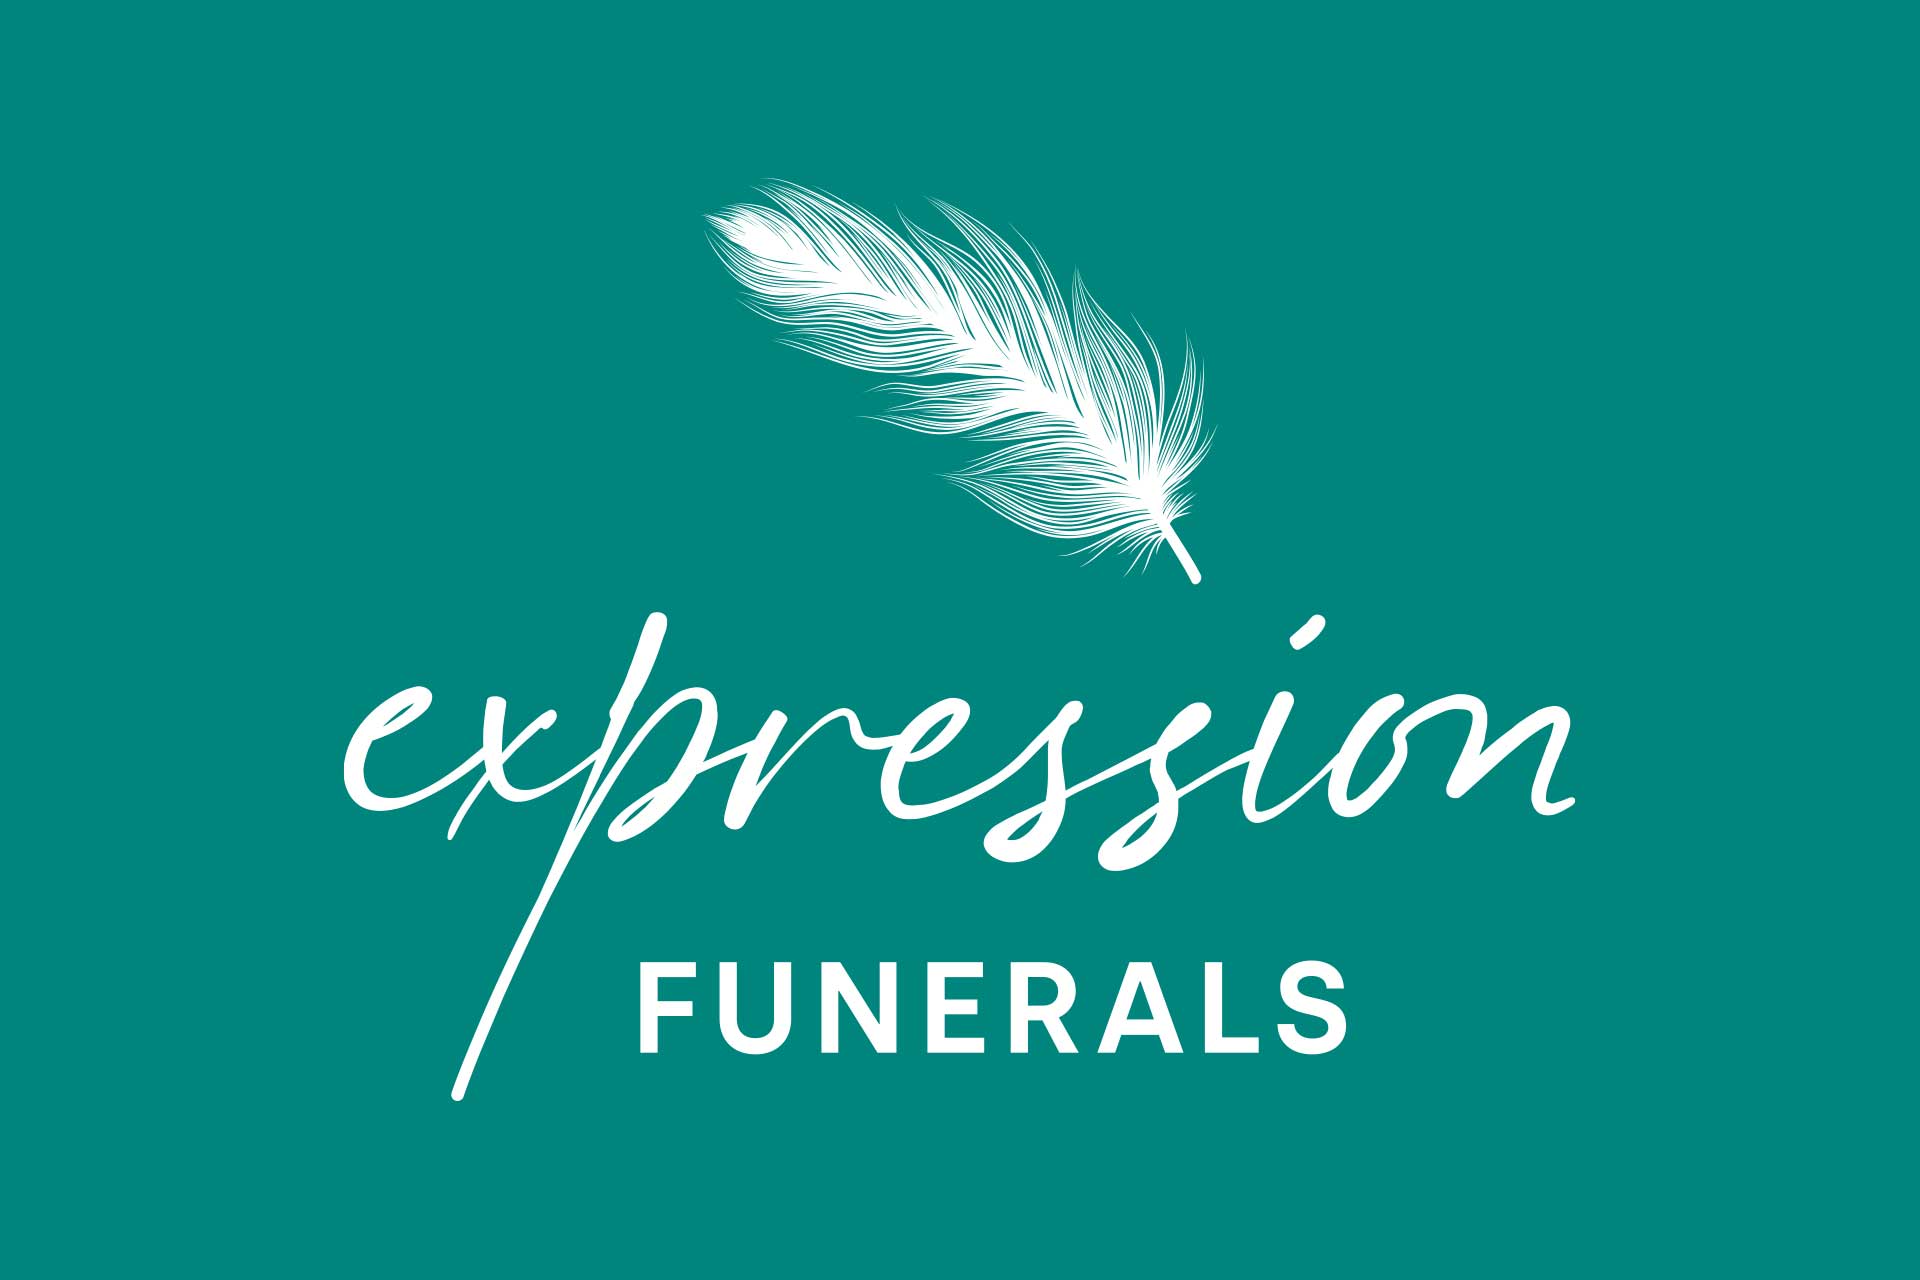 expression-funerals-logo-design-rev-teal